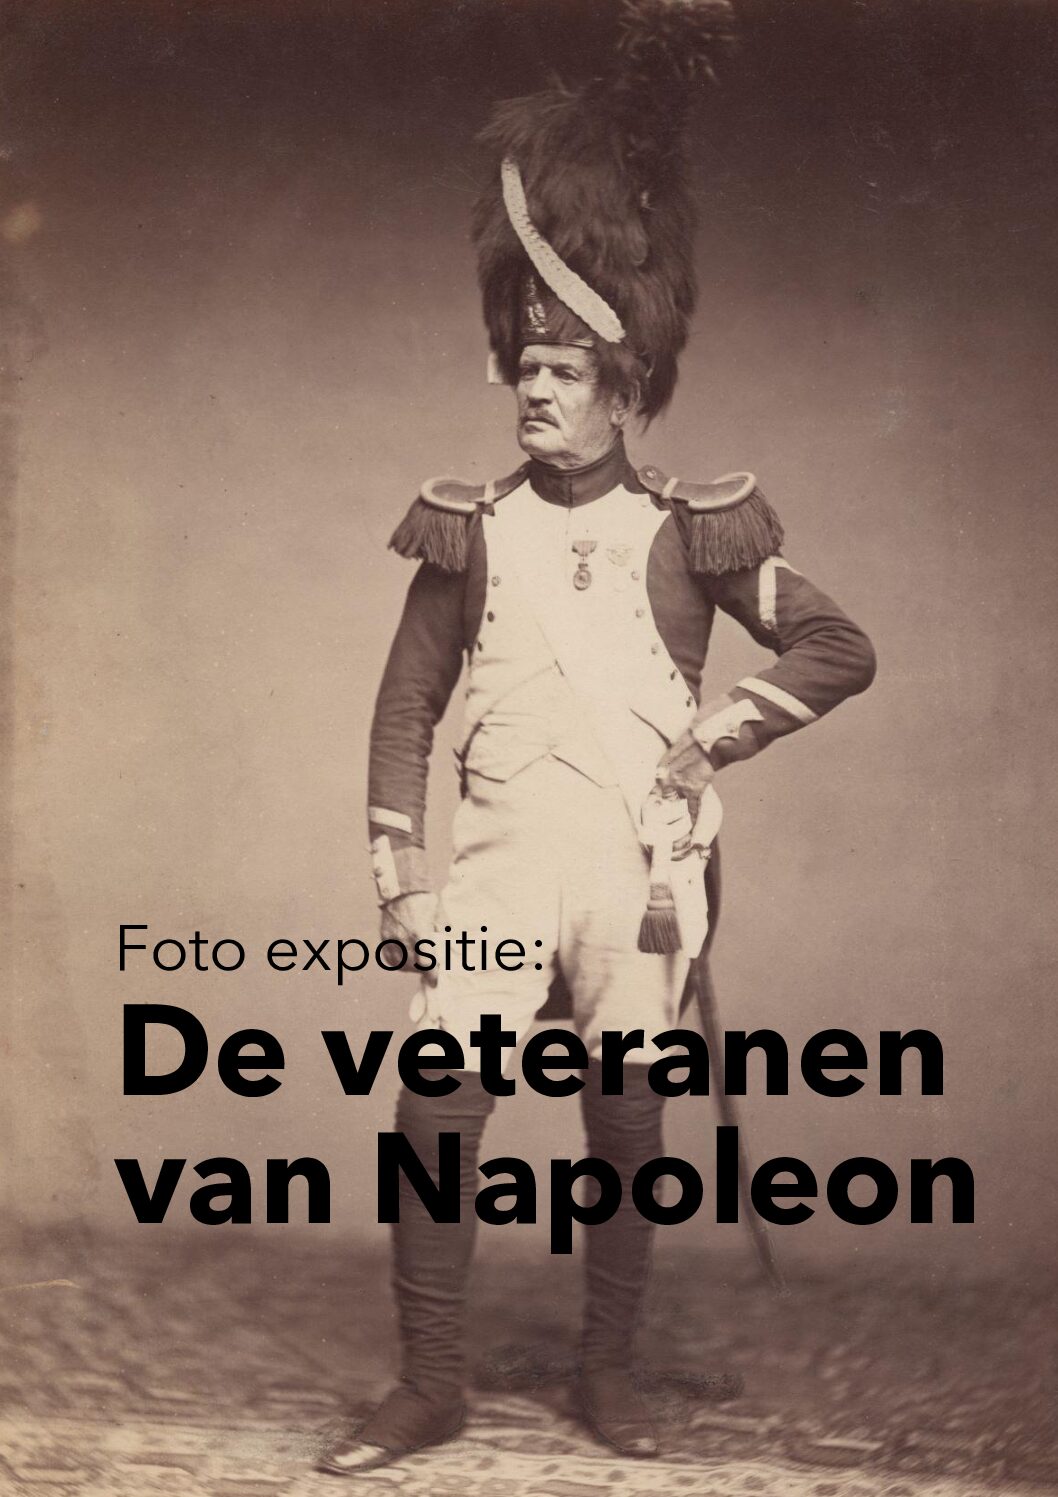 Napoleon’s veterans